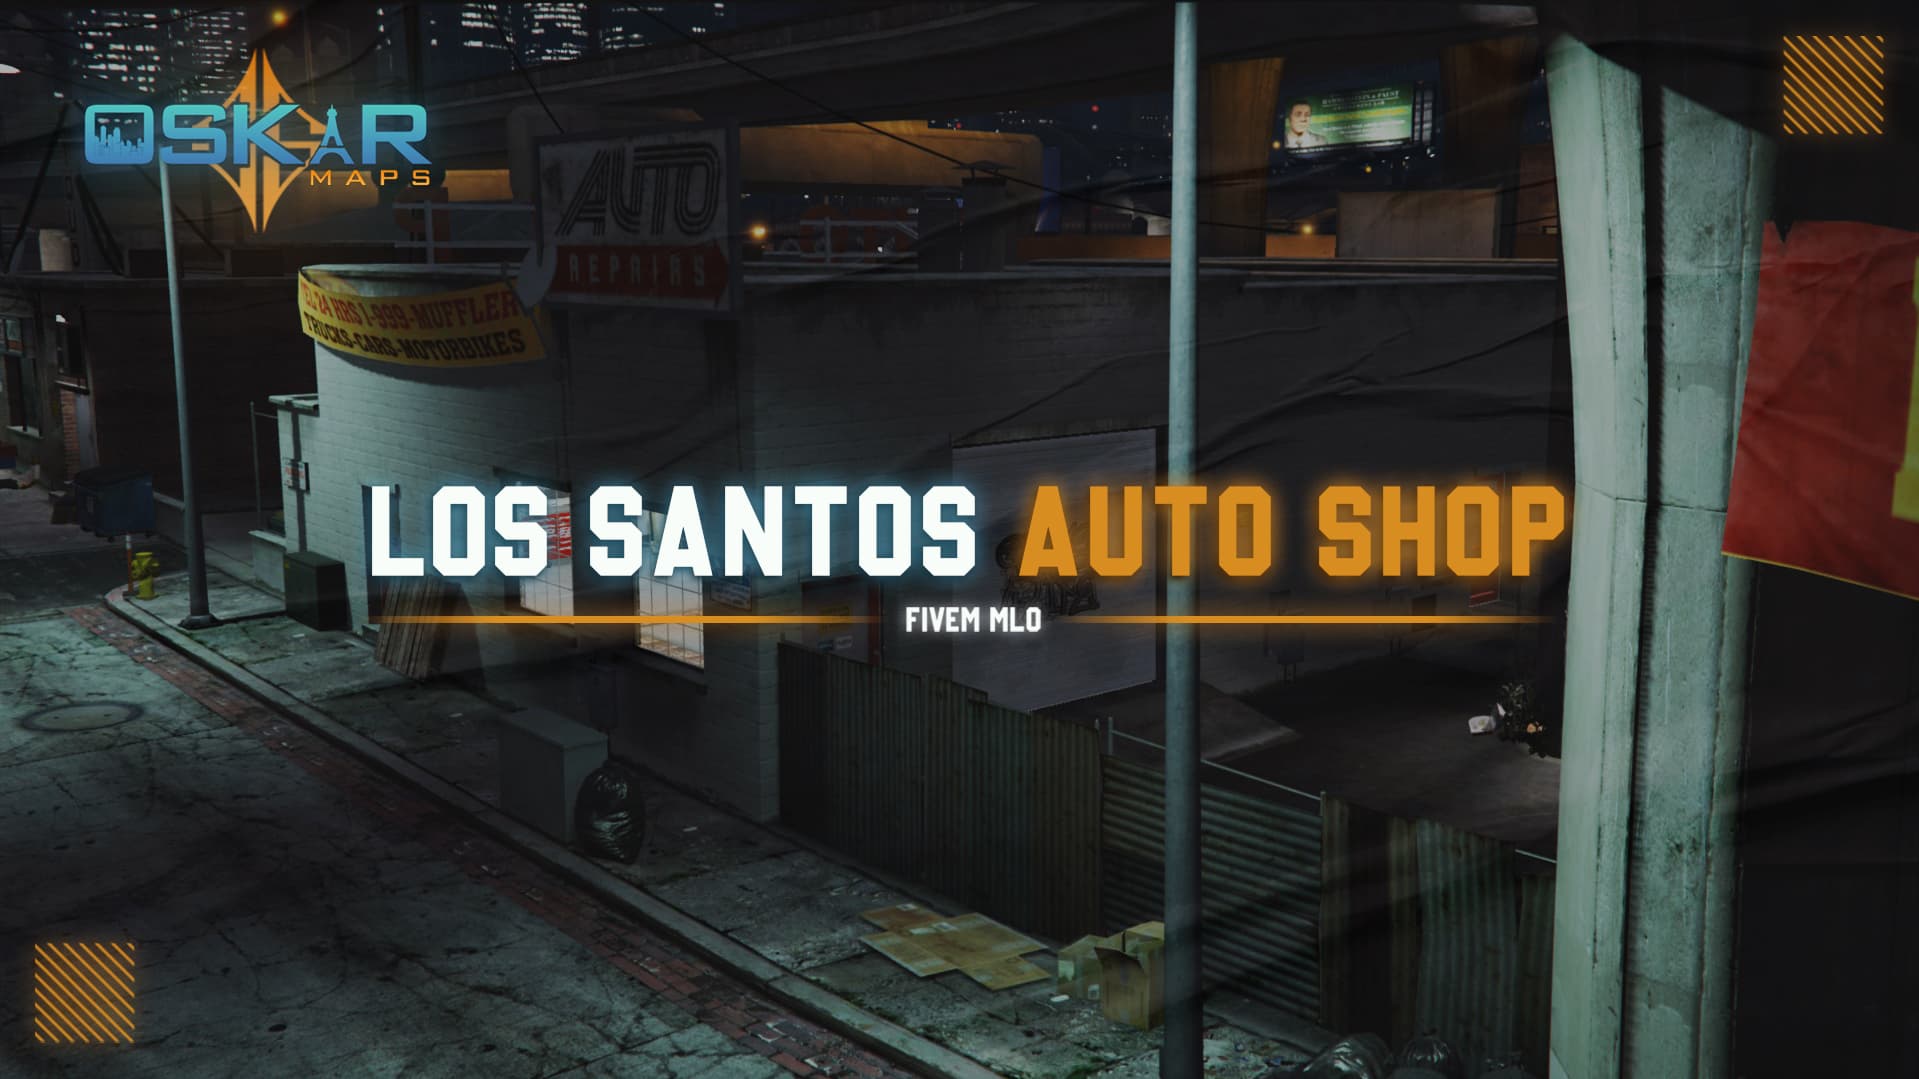 Advert - Los Santos Customs